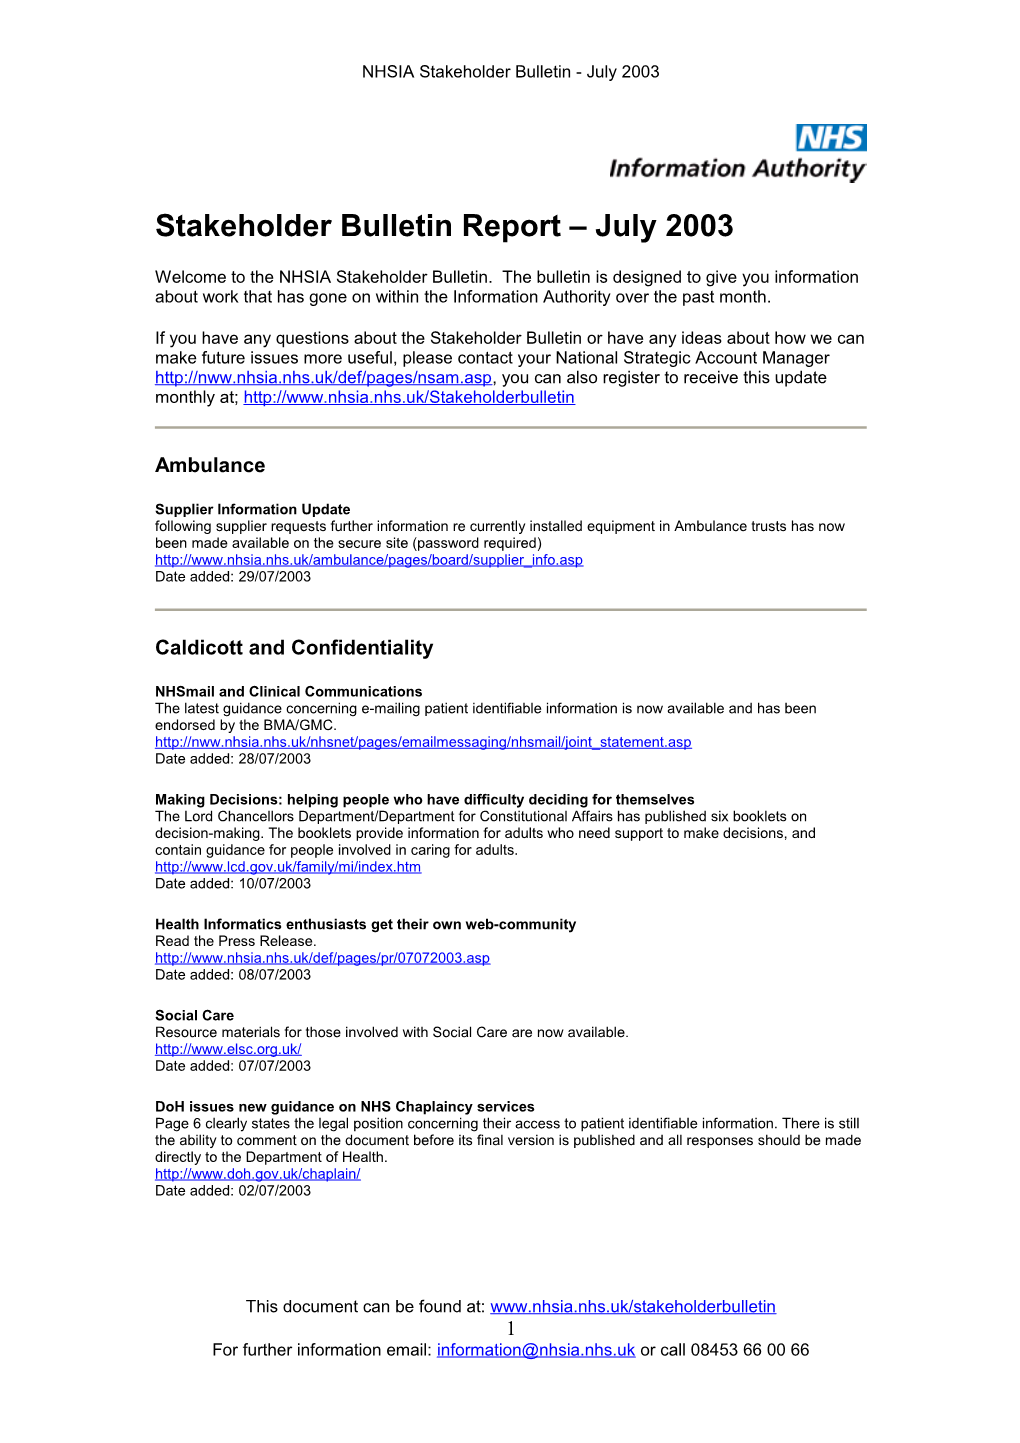 Stakeholder Bulletin Report